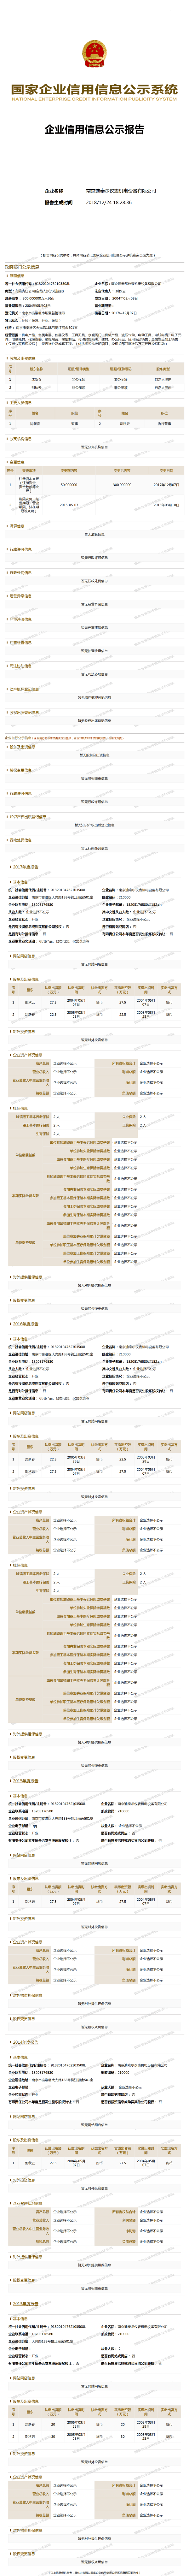 南京迪泰尔仪表机电设备有限公司 (1)